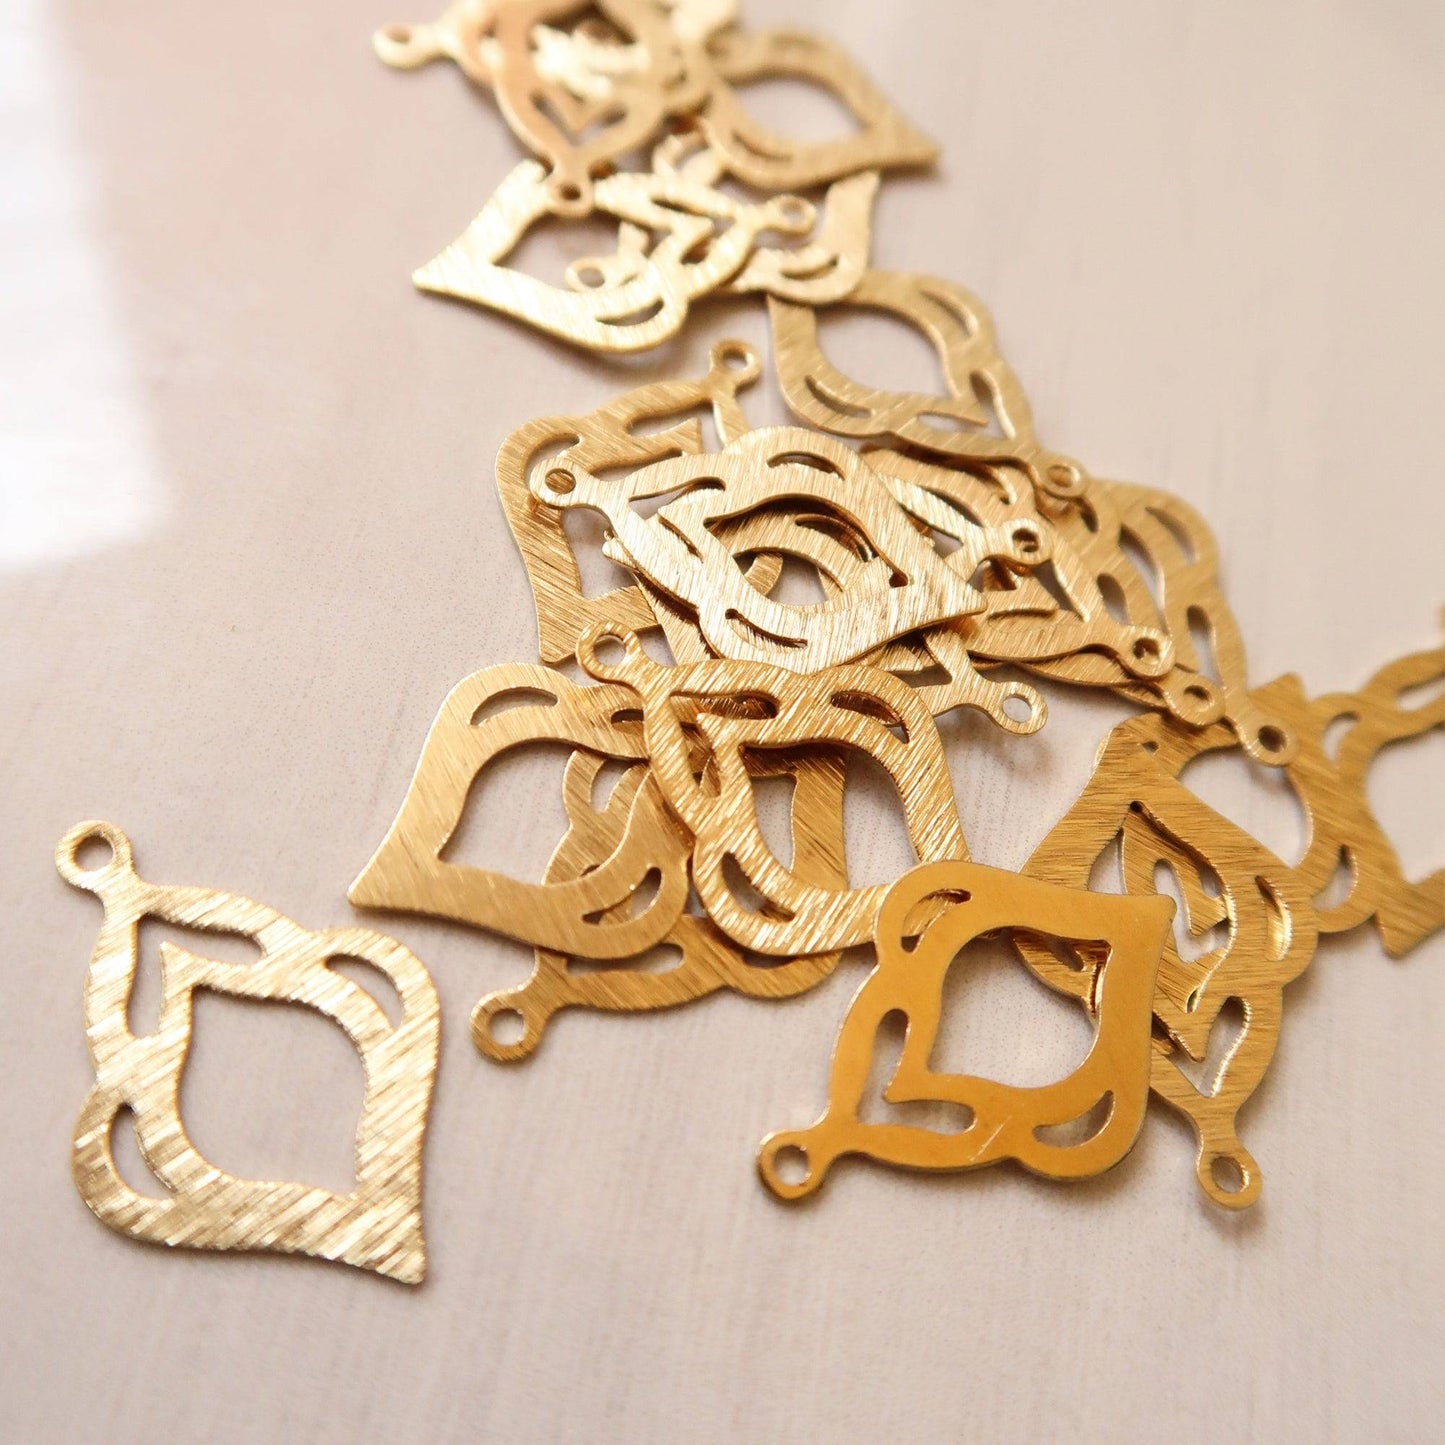 Motif Brass Charm - ClartStudios - Polymer clay Jewellery